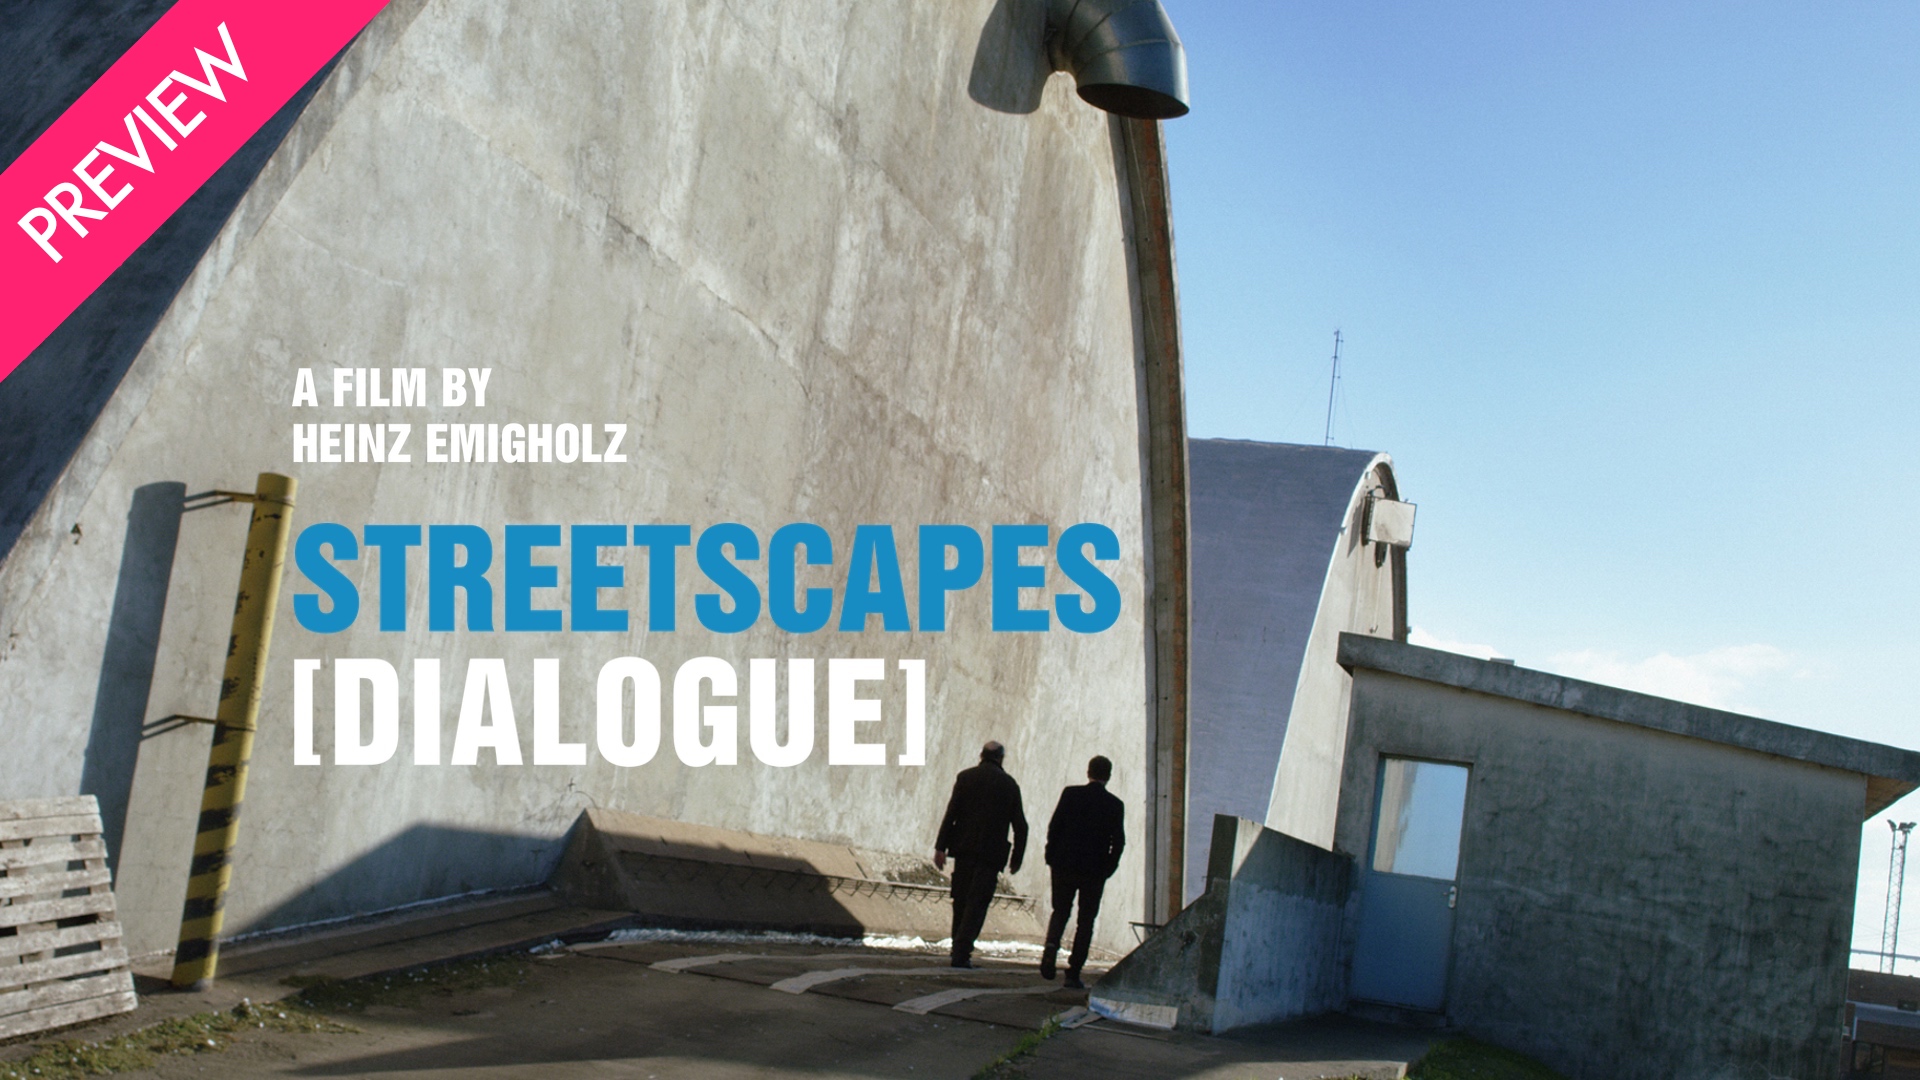 Streetscapes Dialogue